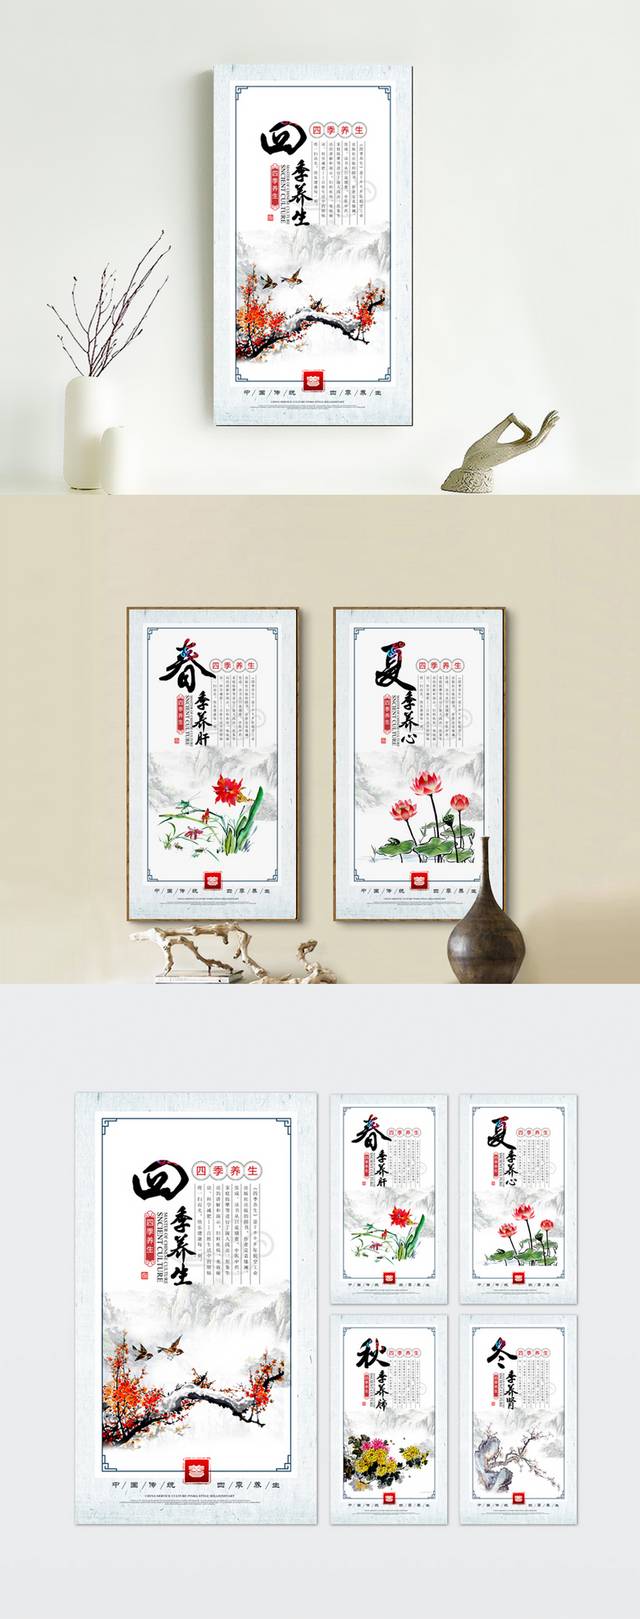 中医四季养生文化宣传海报设计